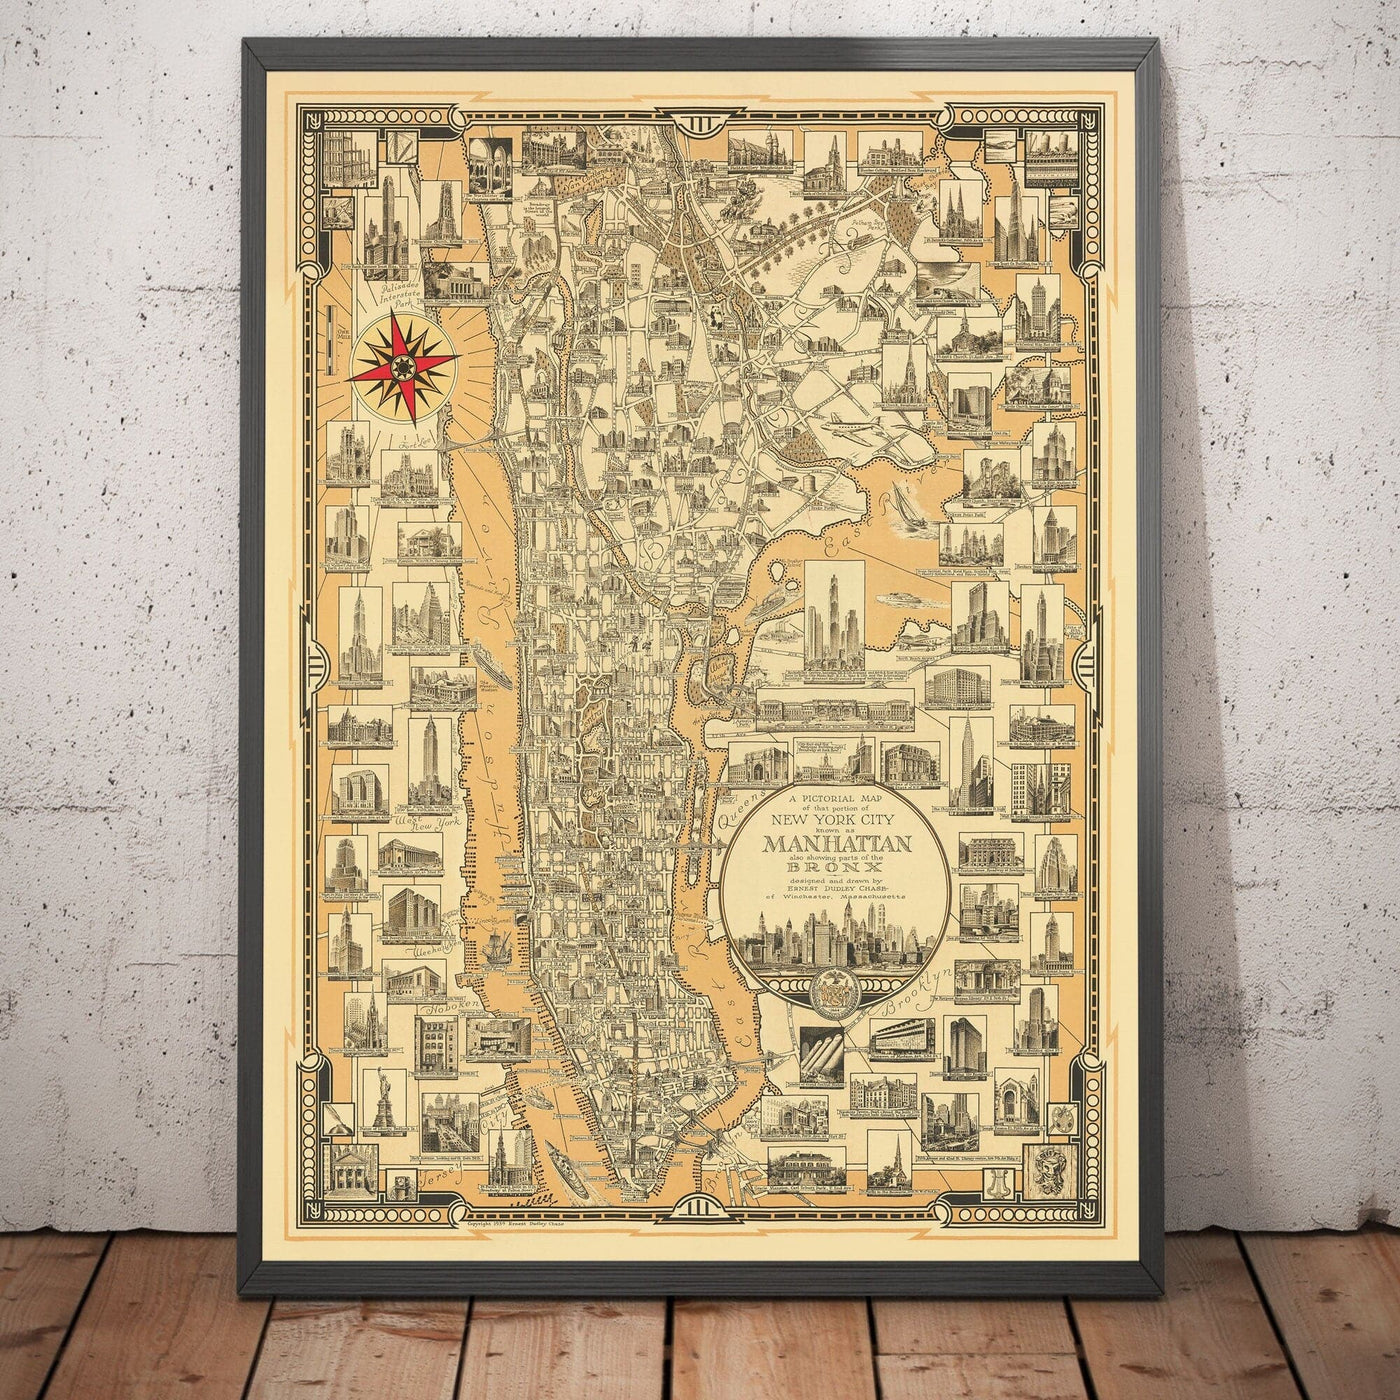 Alte Bildkarte von Manhattan & The Bronx, 1939 von E. Chase - Wahrzeichen, Wolkenkratzer, Hudson River